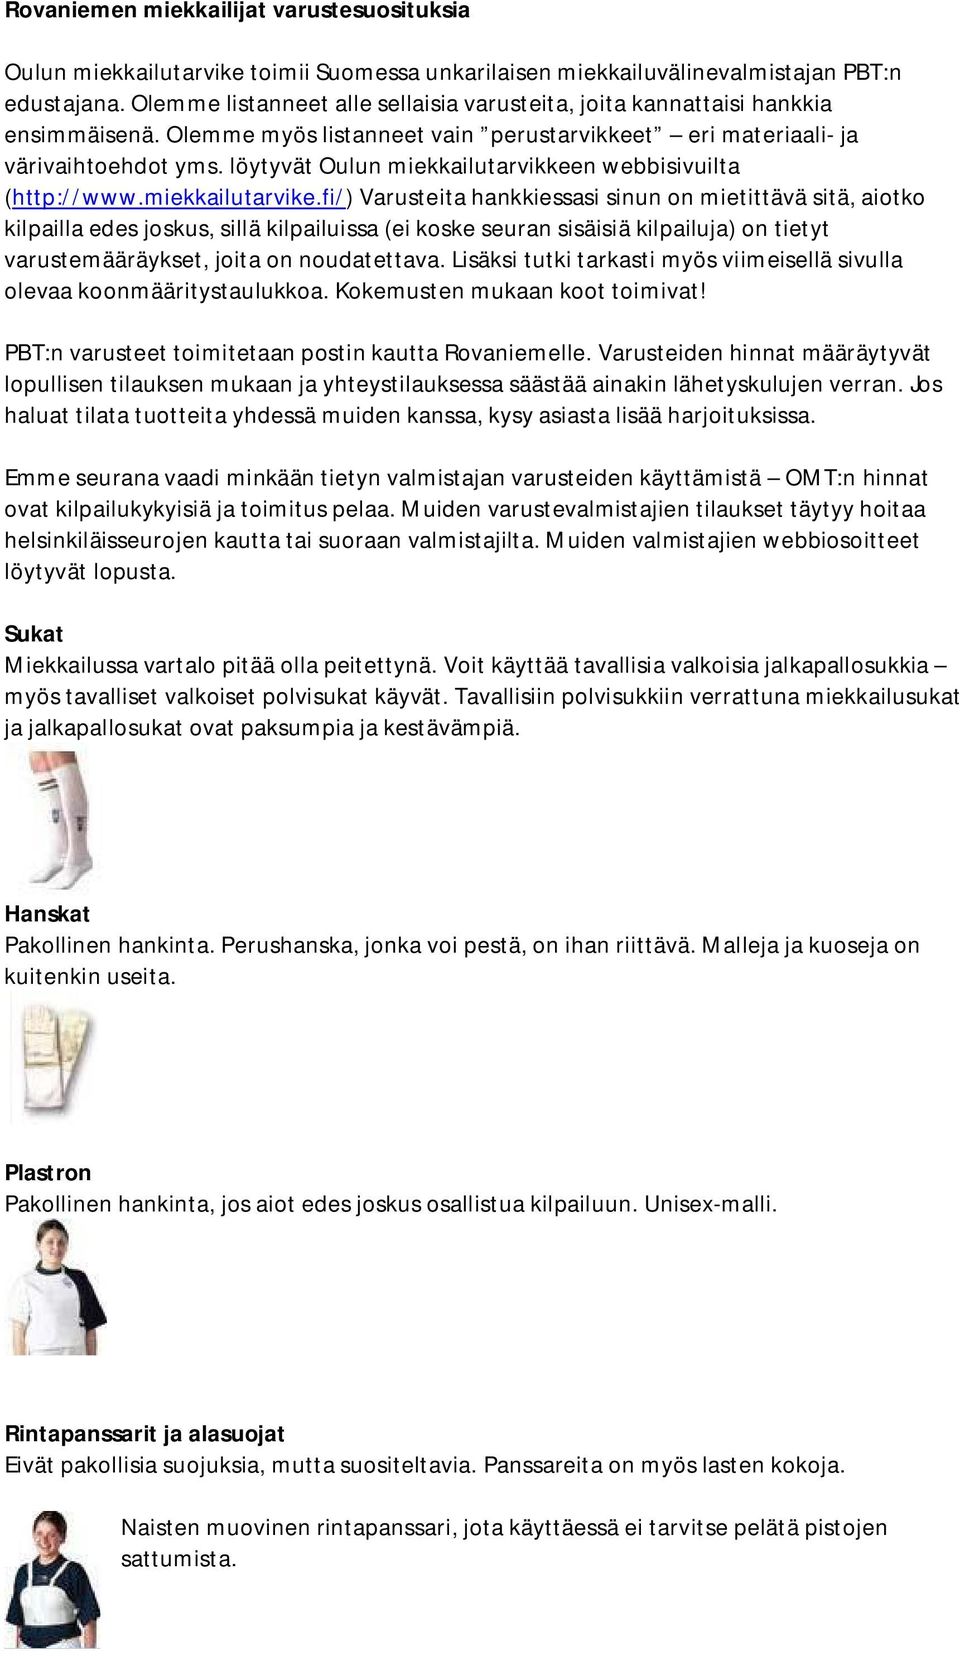 löytyvät Oulun miekkailutarvikkeen webbisivuilta (http://www.miekkailutarvike.